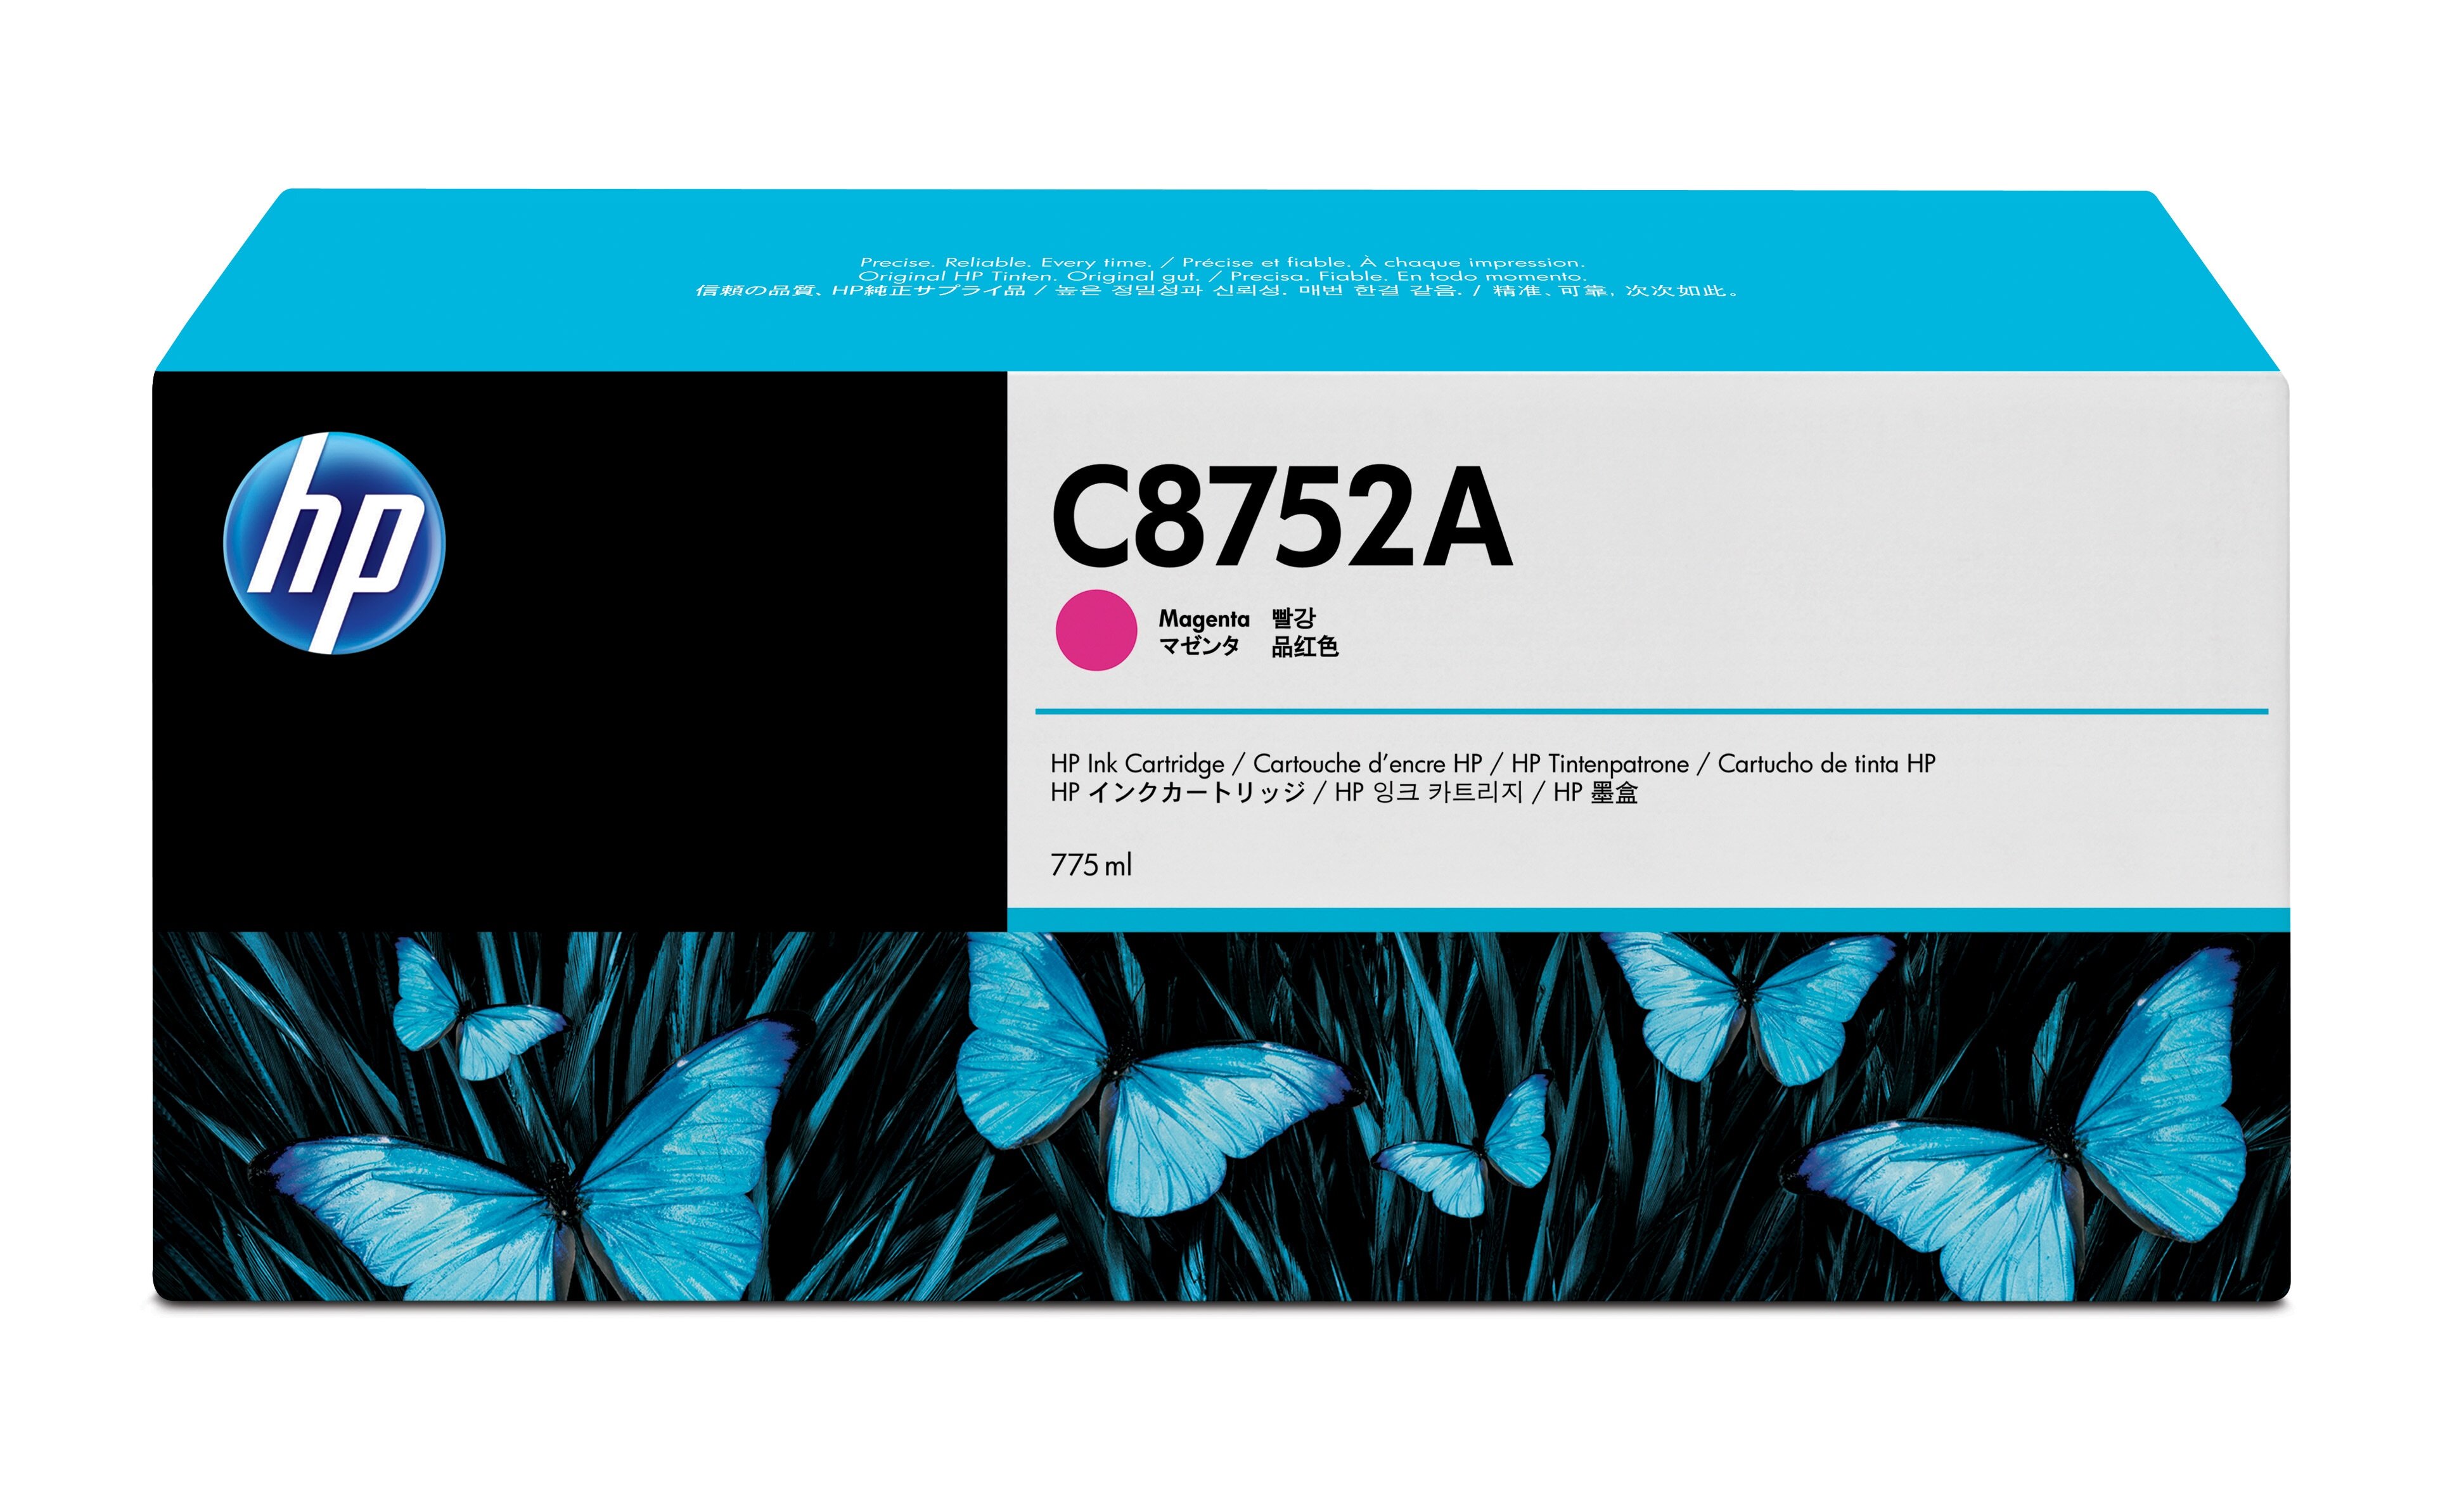 HP C8752A Magenta Original Ink Cartridge single pack / magenta